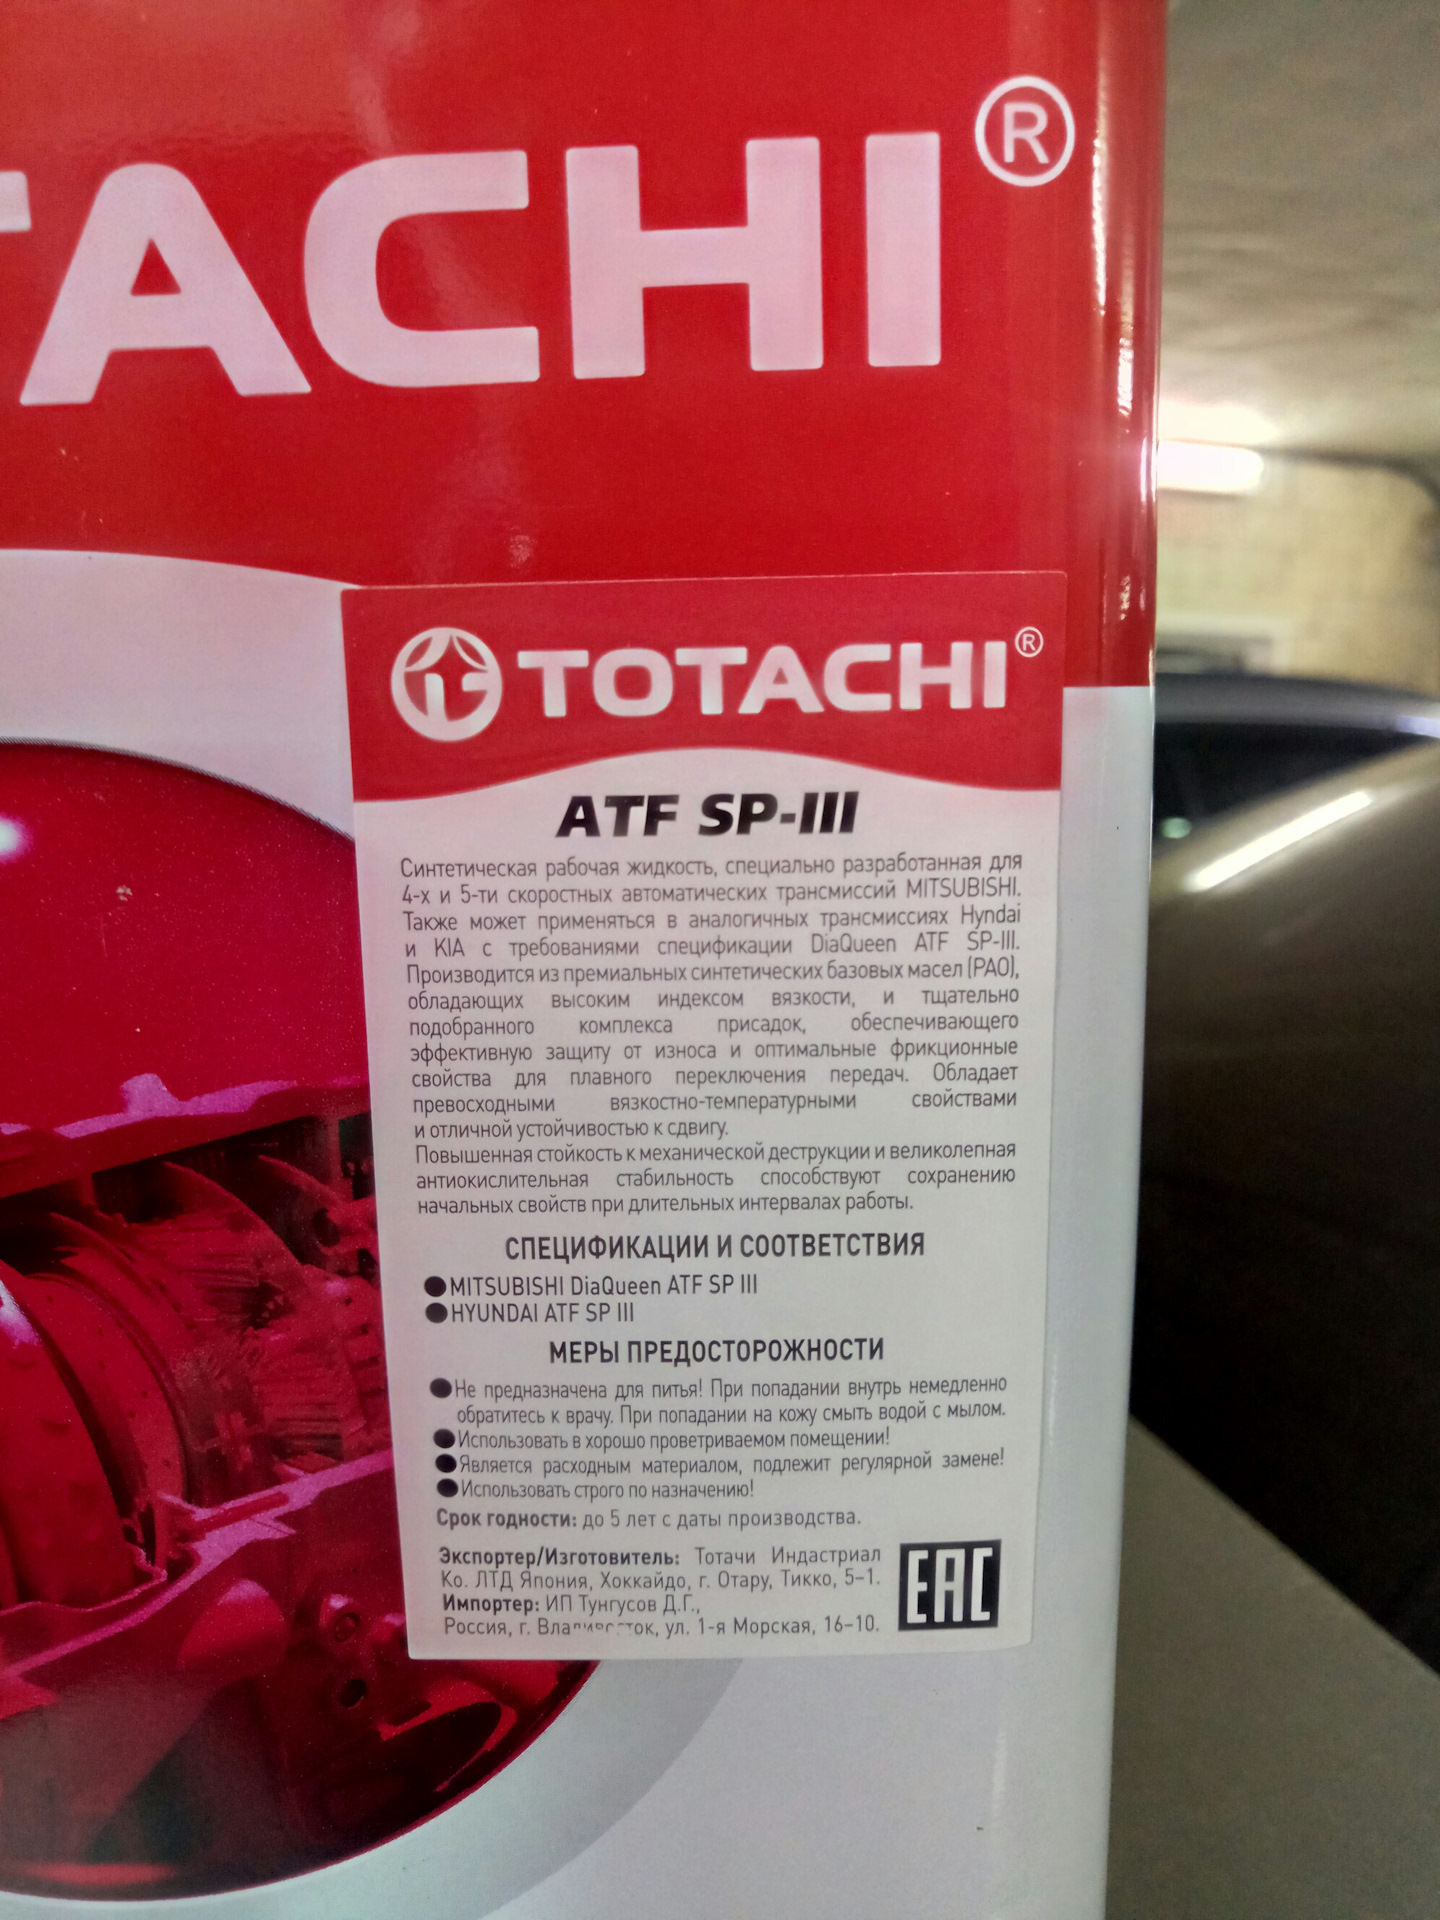 Totachi atf type. TOTACHI ATF Type t-IV. TOTACHI ATF Type t-IV артикул. Дата изготовления масла TOTACHI. Масло в АКПП Митсубиси Лансер 9 1.6 автомат Тотачи.